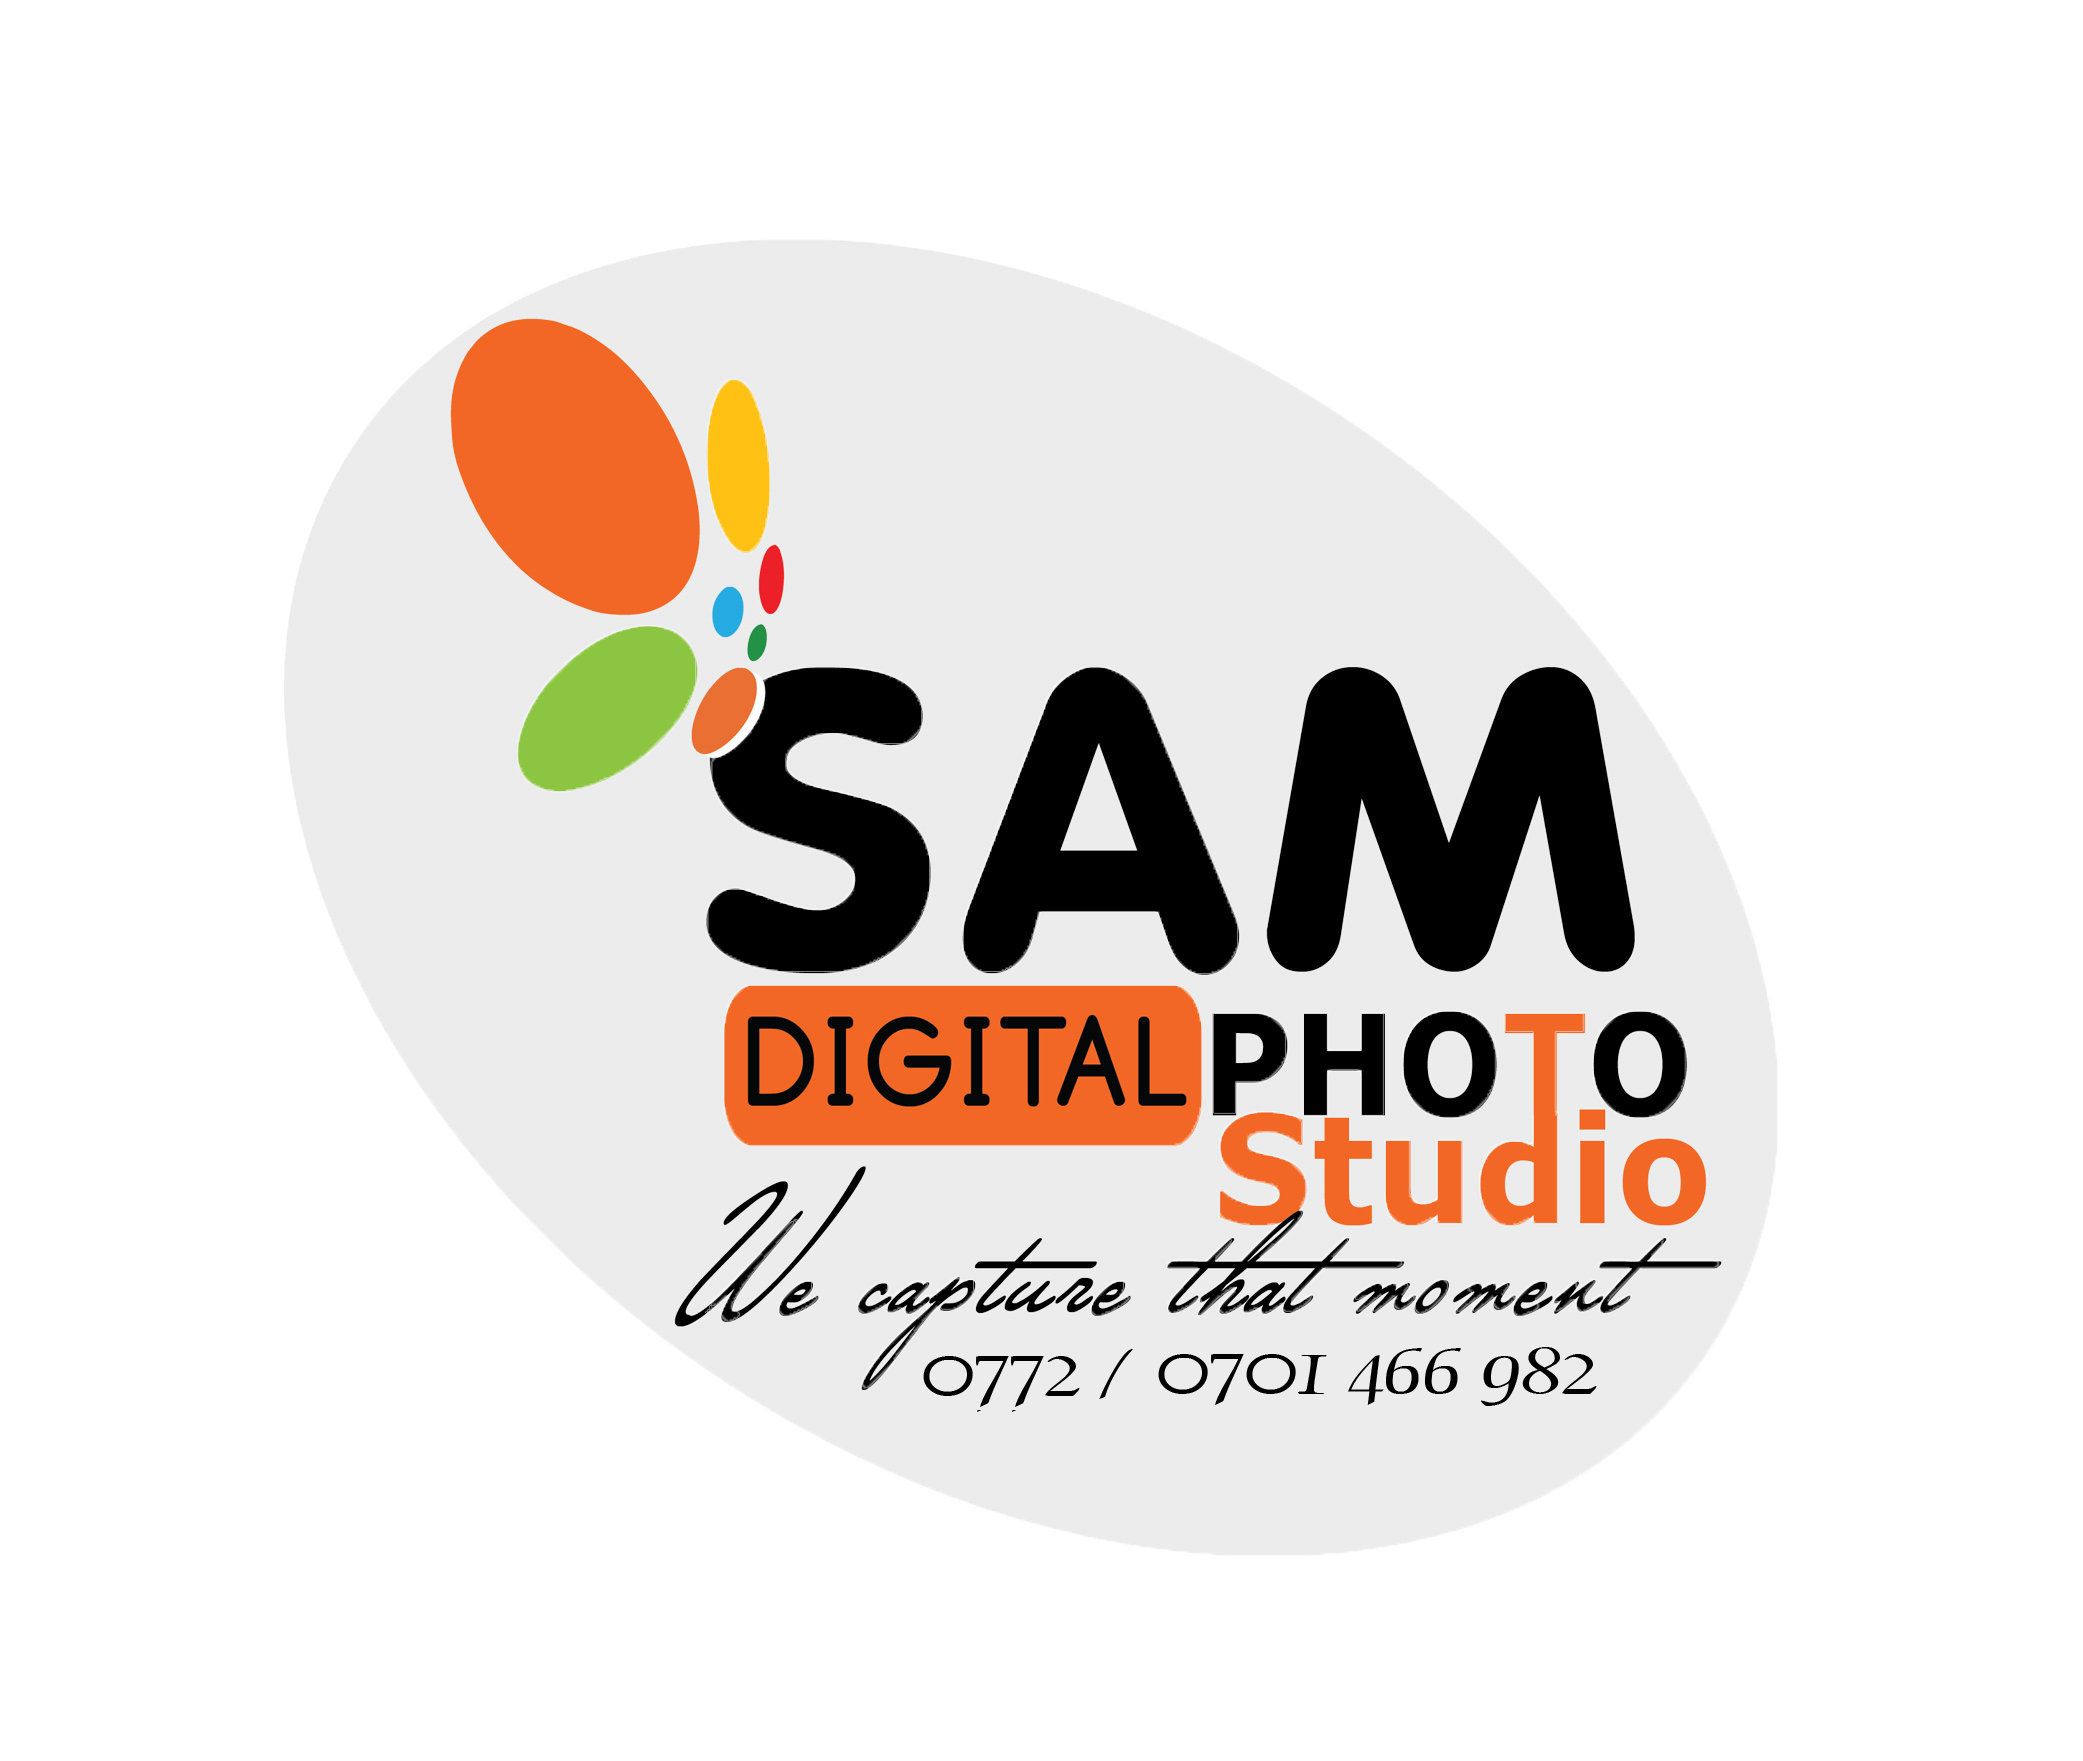 Sam Digital Photo Studio